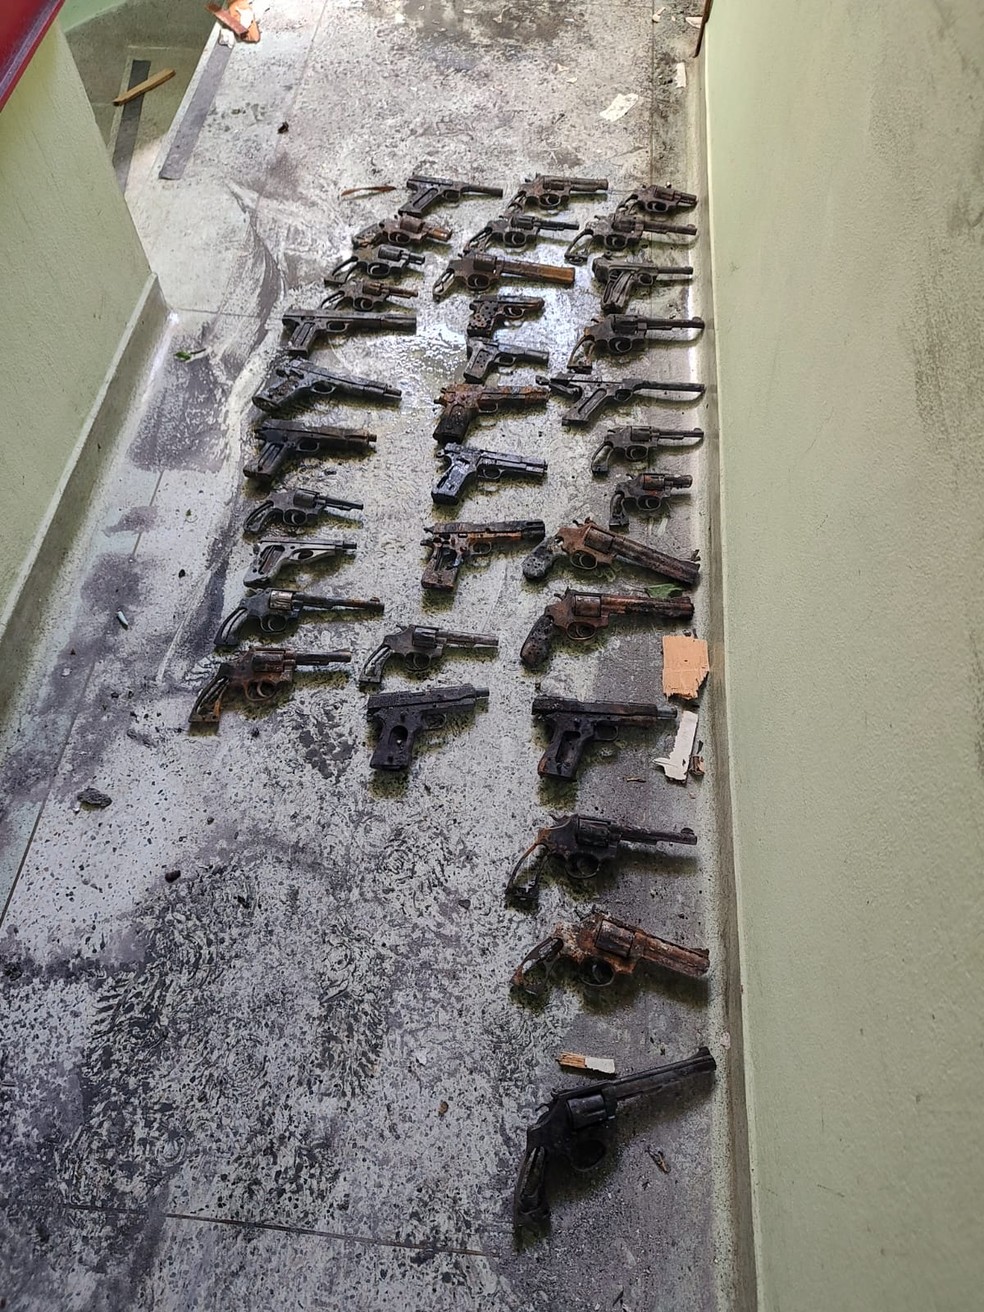 General guardava 60 armas e 3 mil munições em apartamento incendiado em Campinas — Foto: Arquivo pessoal